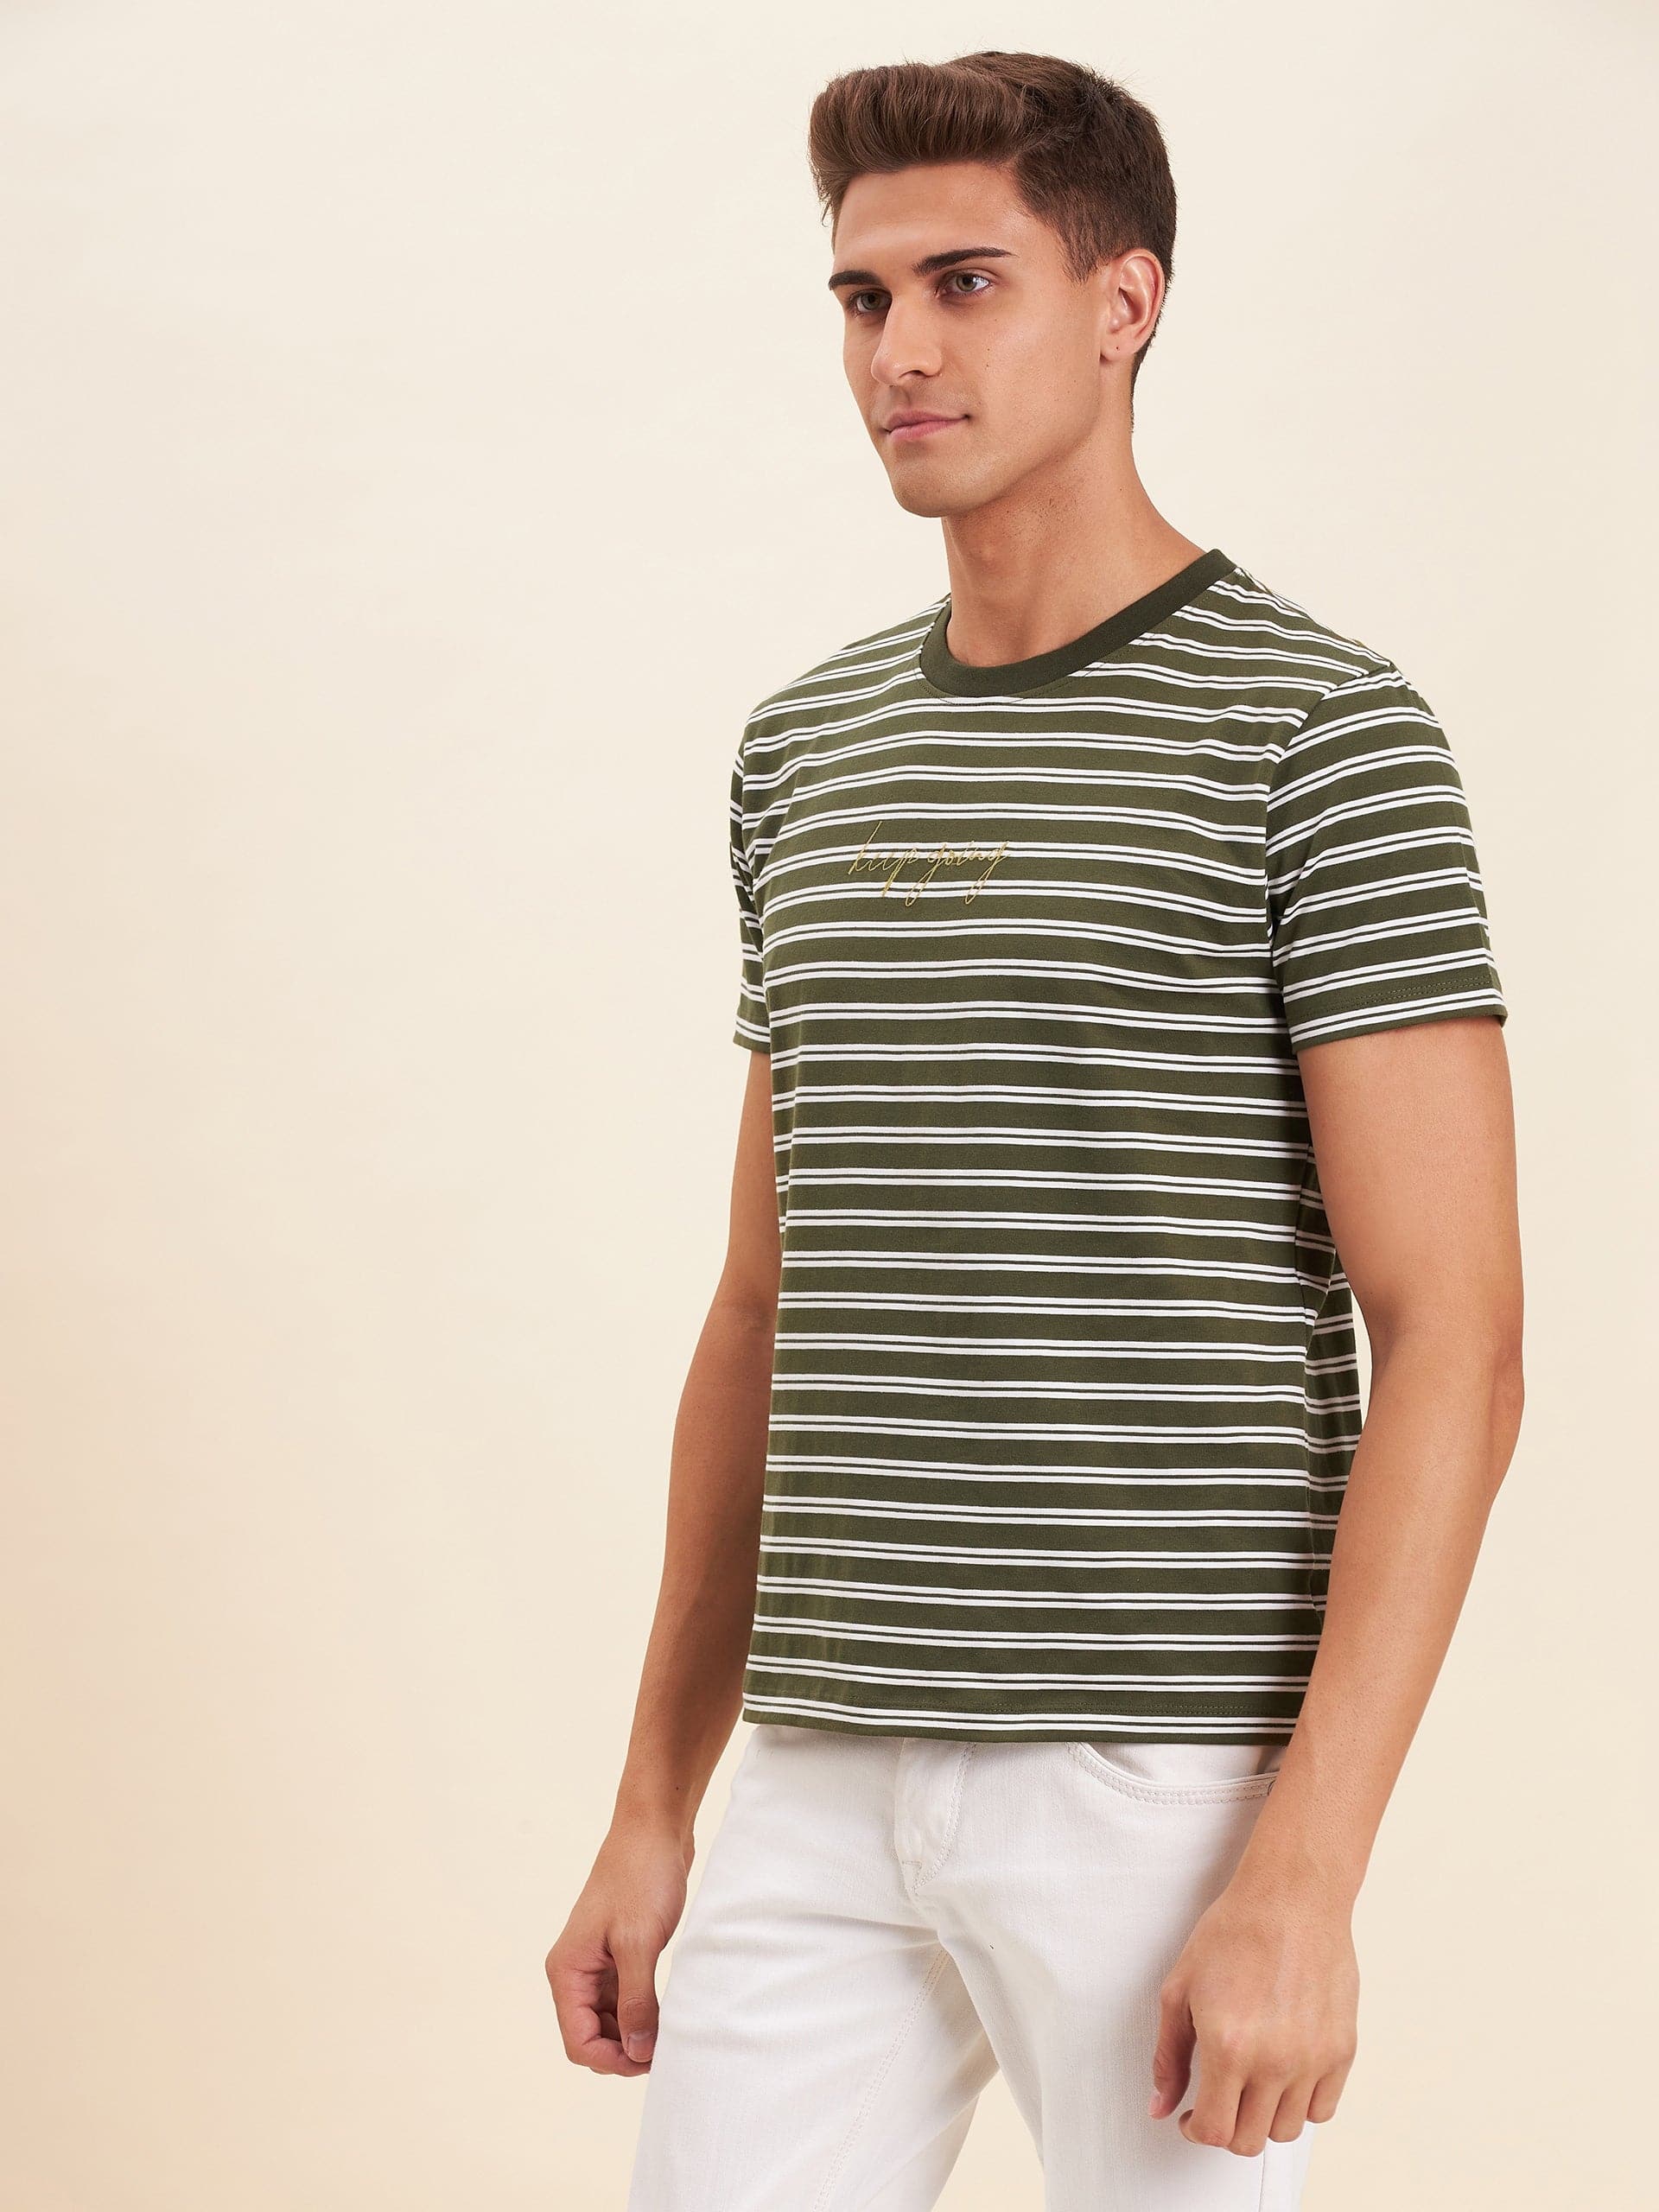 Men's Olive & White Stripes Embroidered Cotton T-Shirt - LYUSH-MASCLN